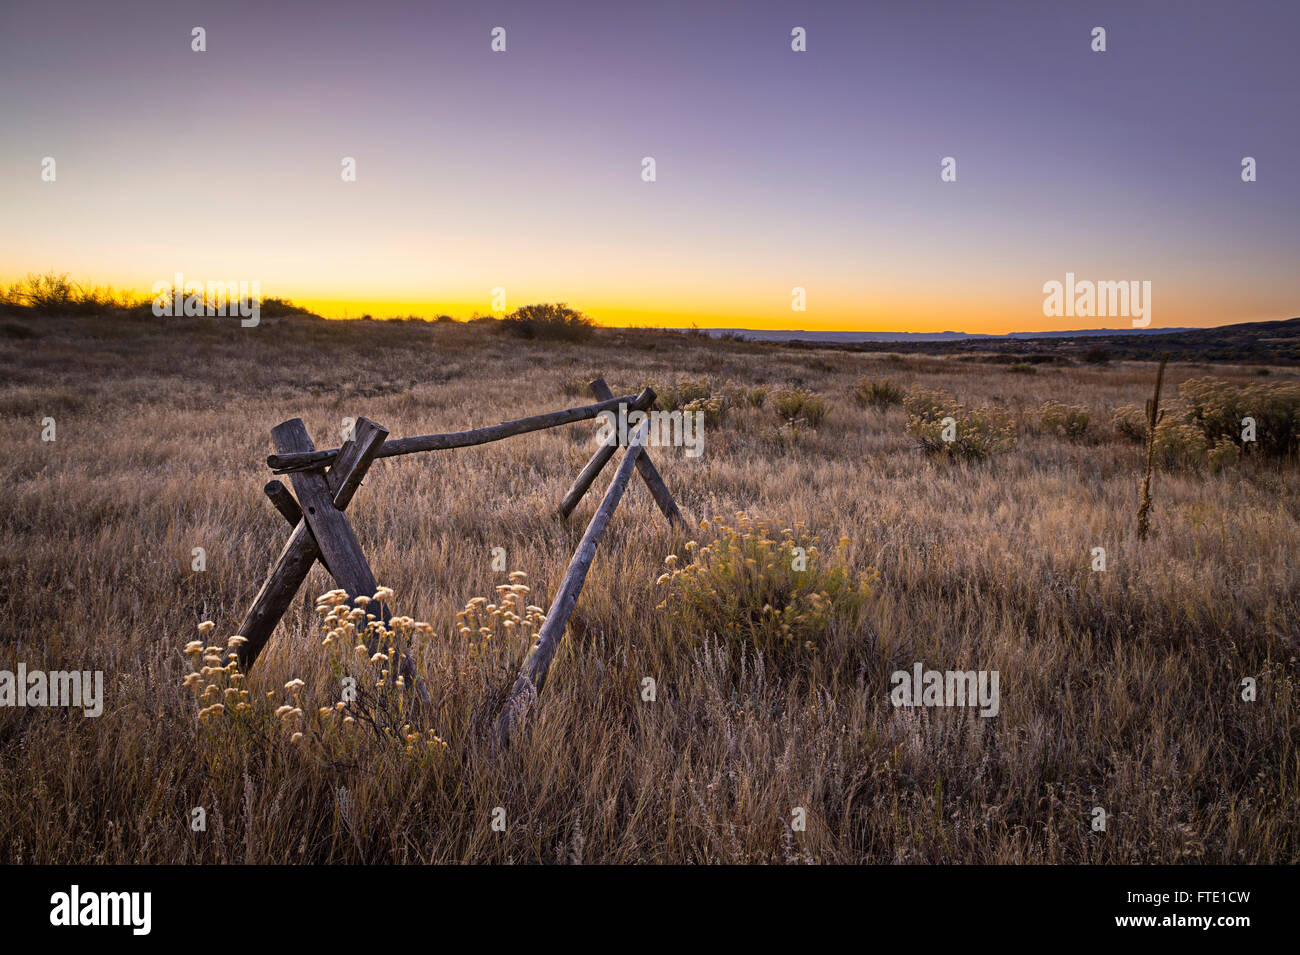 Split clôture dans le champ au lever du soleil, l'Ouest Américain Paysage, Colorado, USA Banque D'Images